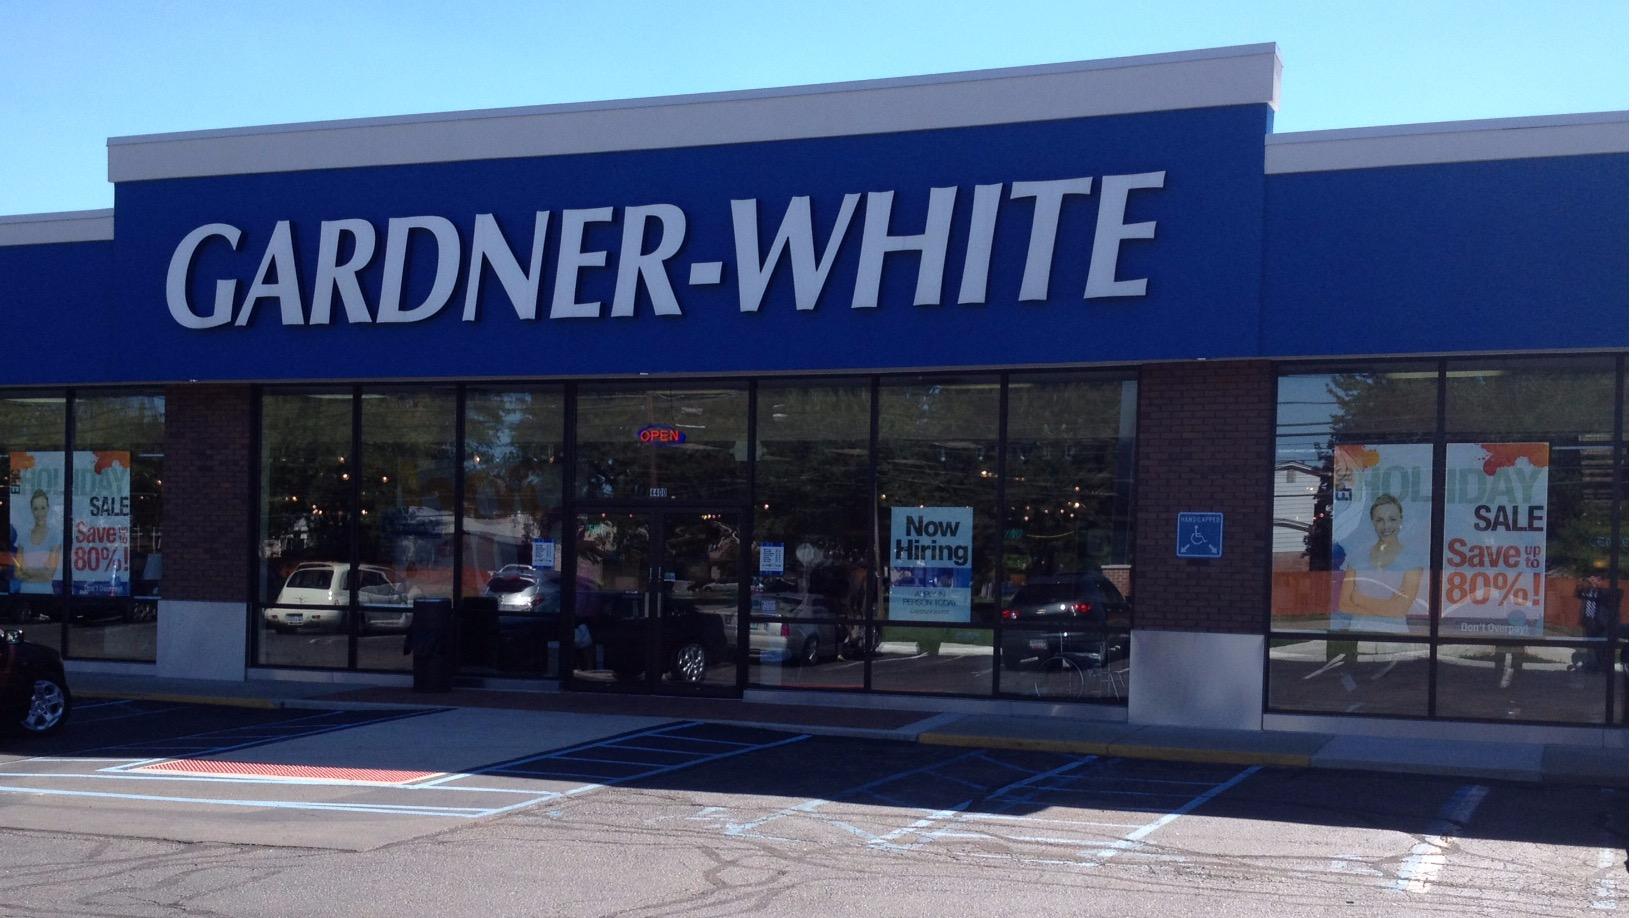 Gardner White Furniture & Mattress Store